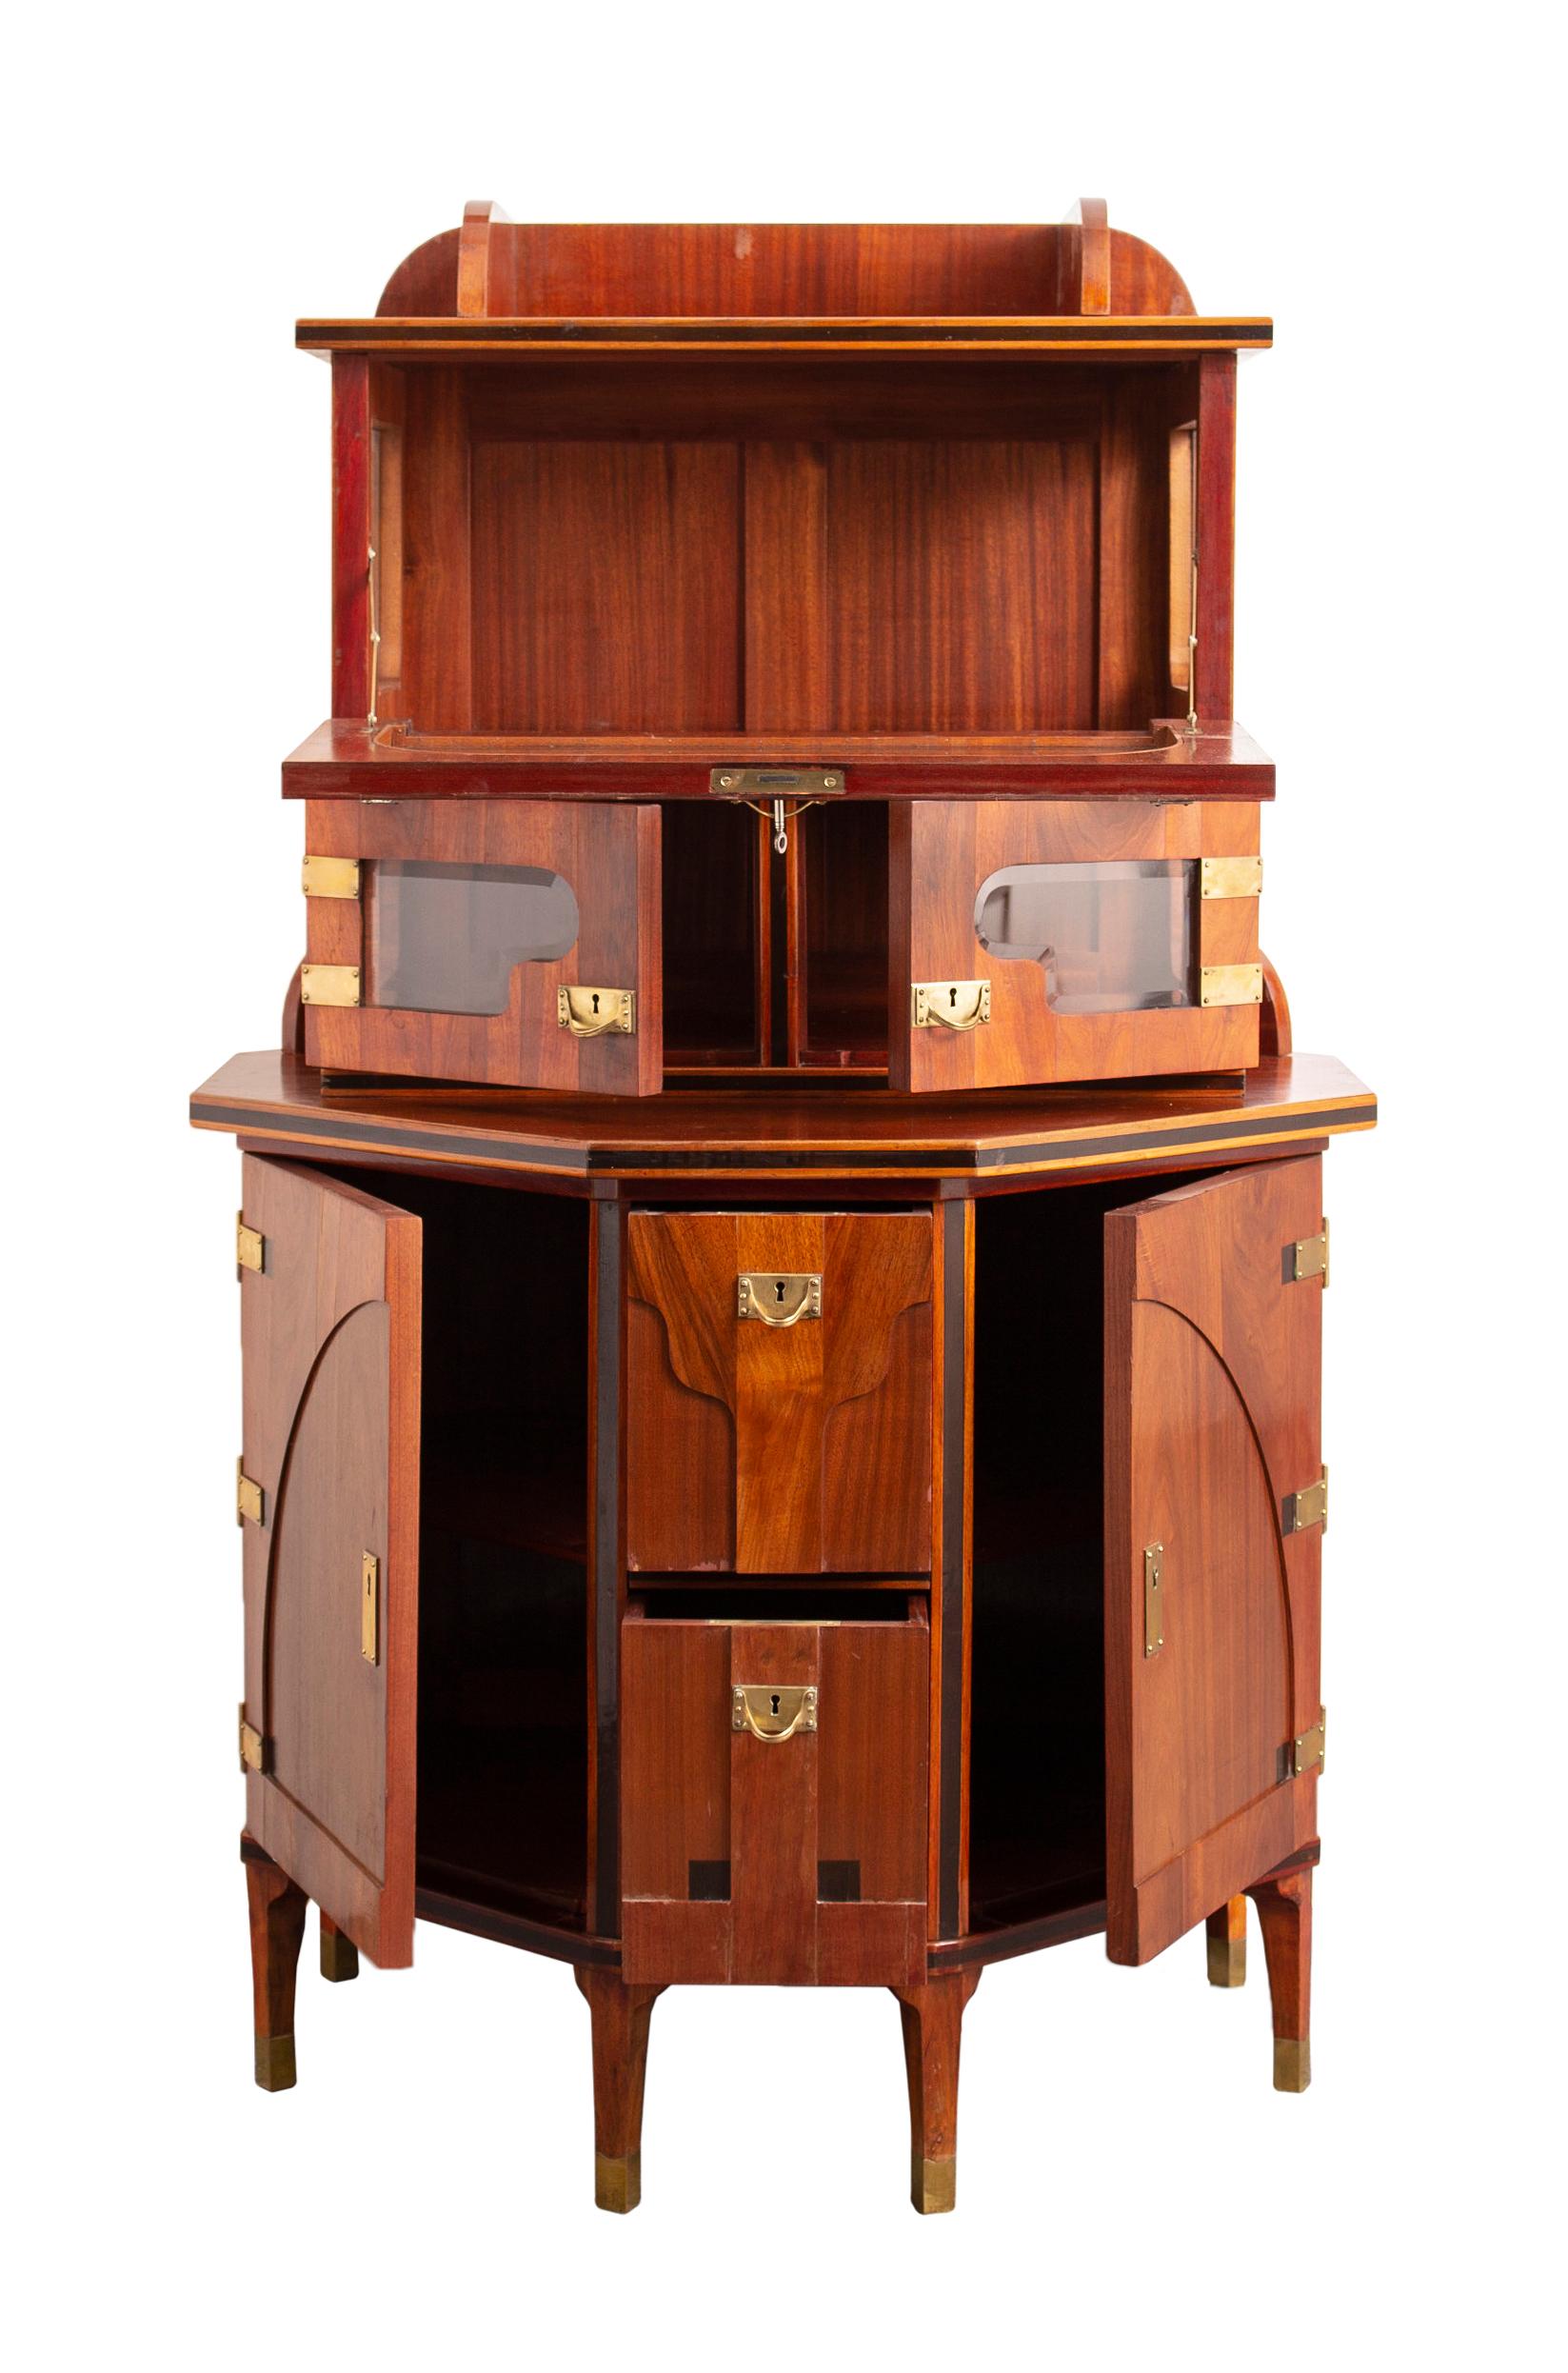 Este valioso mueble Art Nouveau fue fabricado por la famosa fábrica vienesa de muebles August Ungethüm Kunst-Möbel-Fabrik. El gabinete documenta el gusto vienés de la época y es en sí mismo una pieza rara de calidad museística. El armario se diseñó